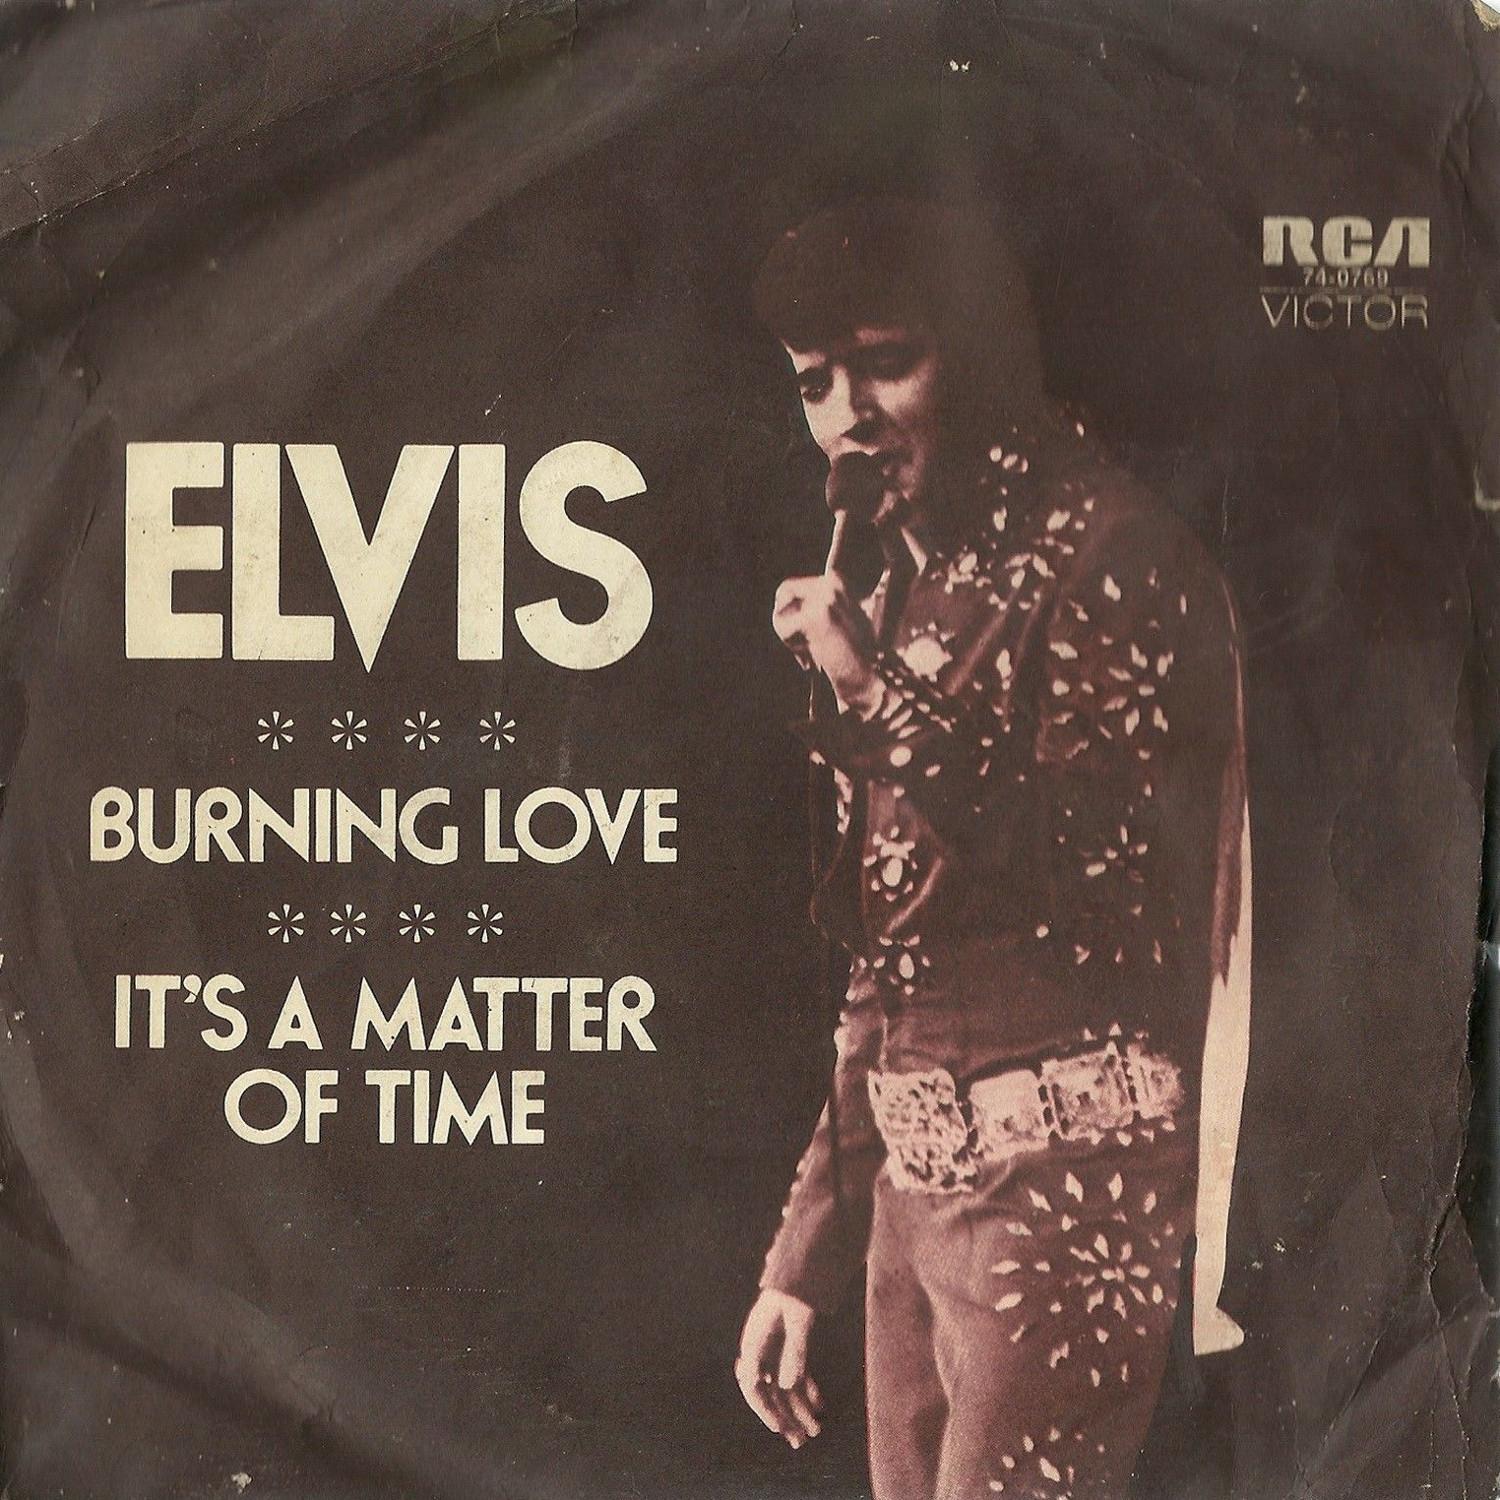 love - Burning Love / It's A Matter Of Time 47-0769auss1z